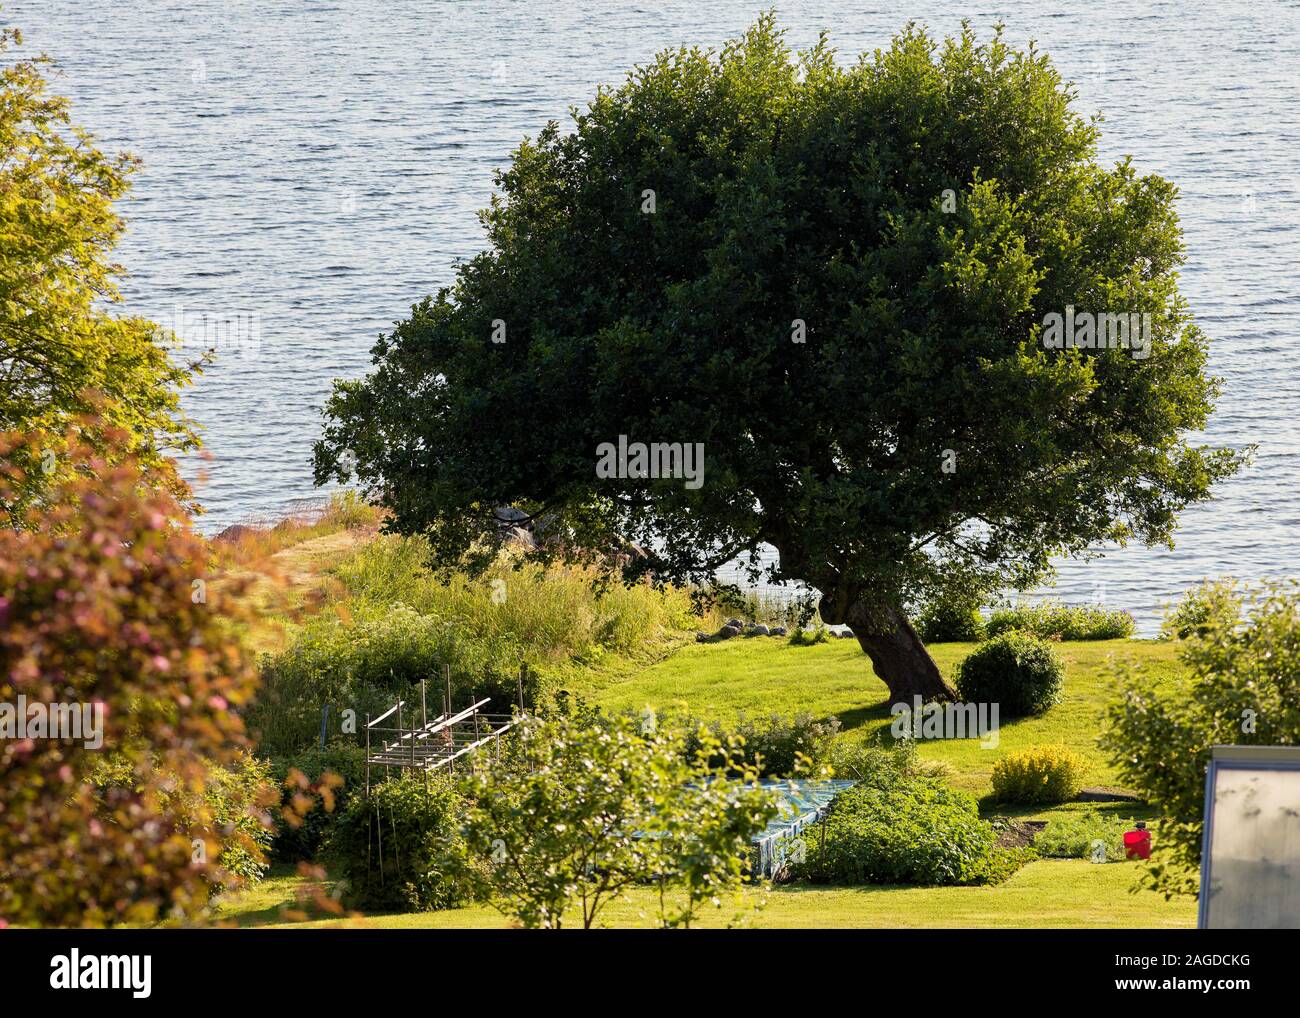 Árbol rico, inclinado en un paisaje costero de verano, Costa Alta, Suecia Foto de stock